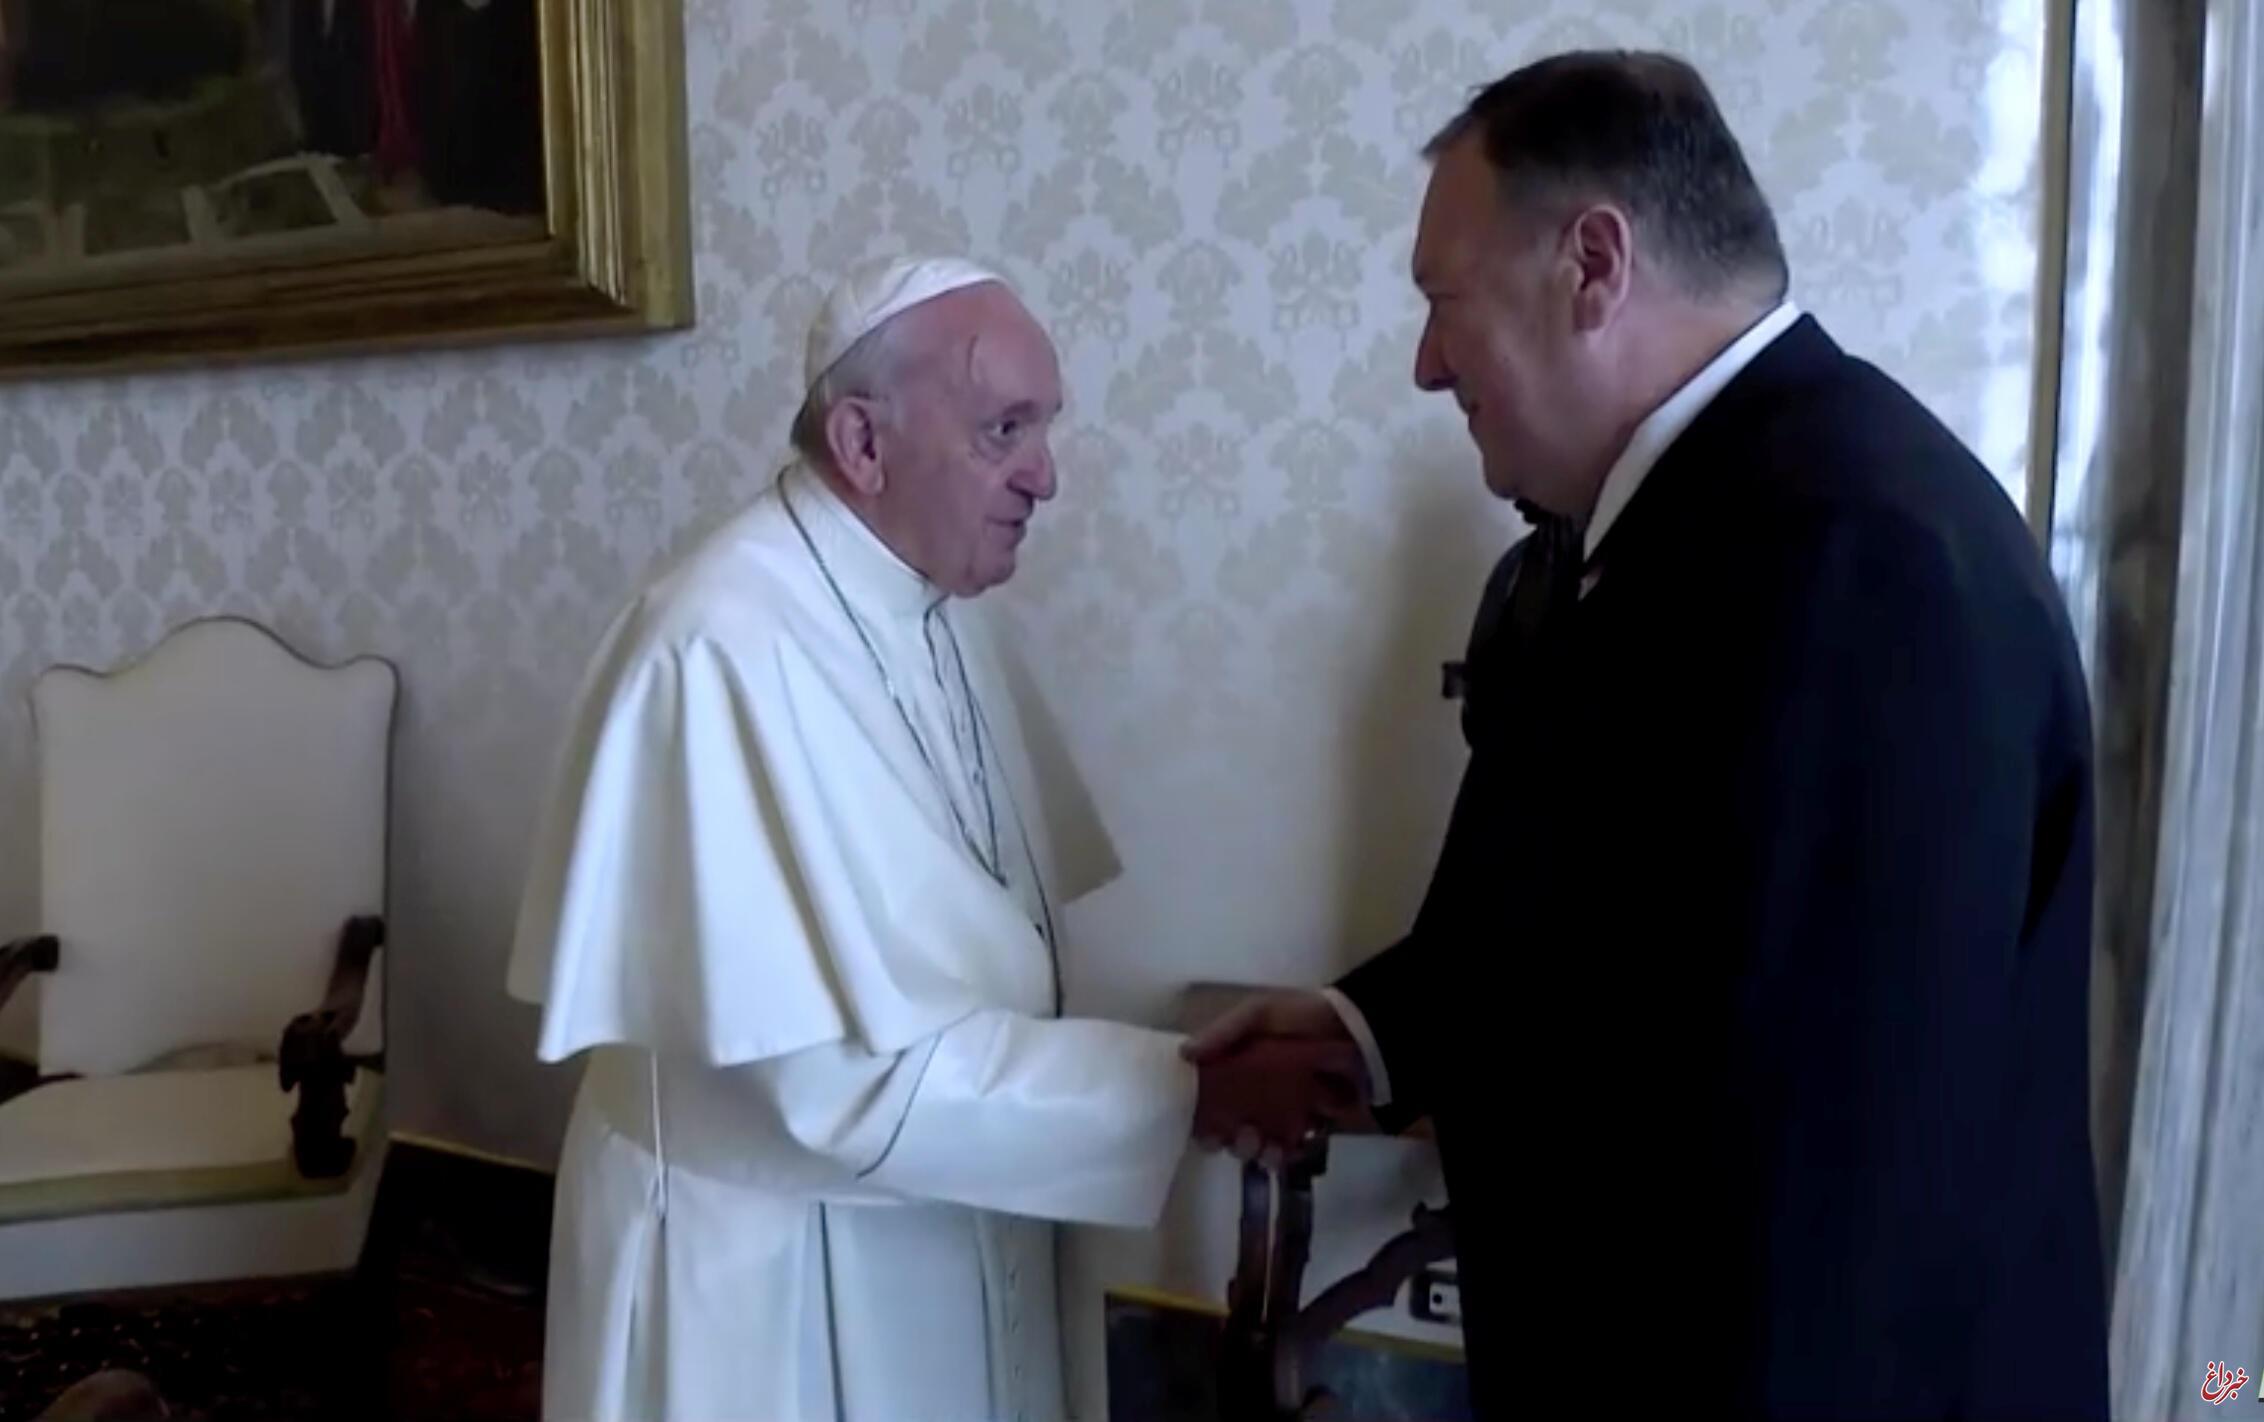 پاپ حاضر به دیدار با پومپئو نشد / واتیکان: پاپ در میانه رویدادهای انتخاباتی حاضر به دیدار با سیاستمداران نیست